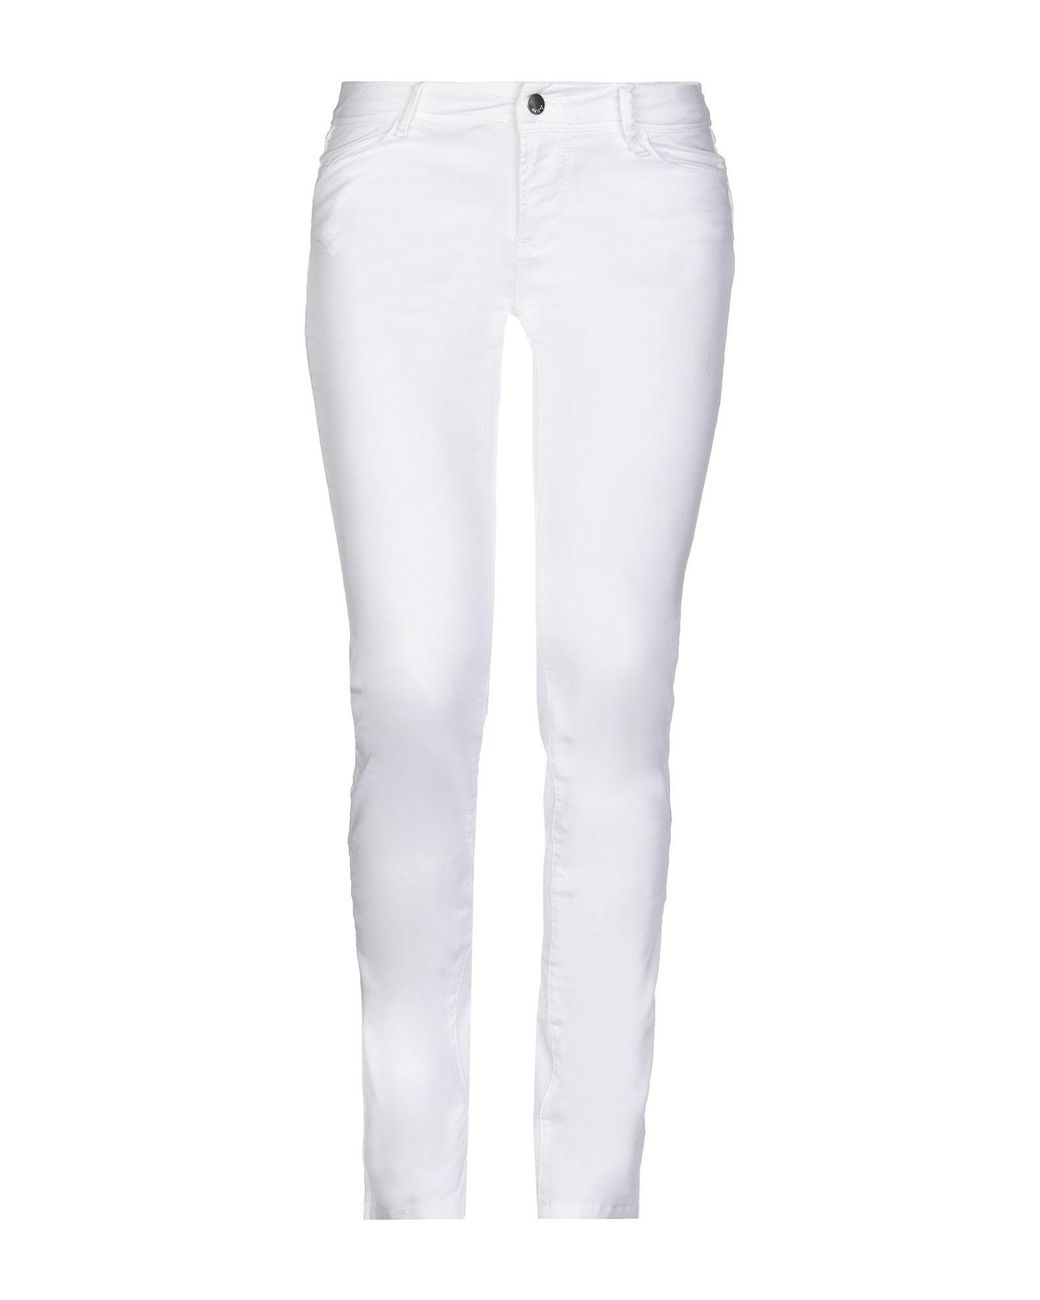 Lyst - Met Casual Pants in White